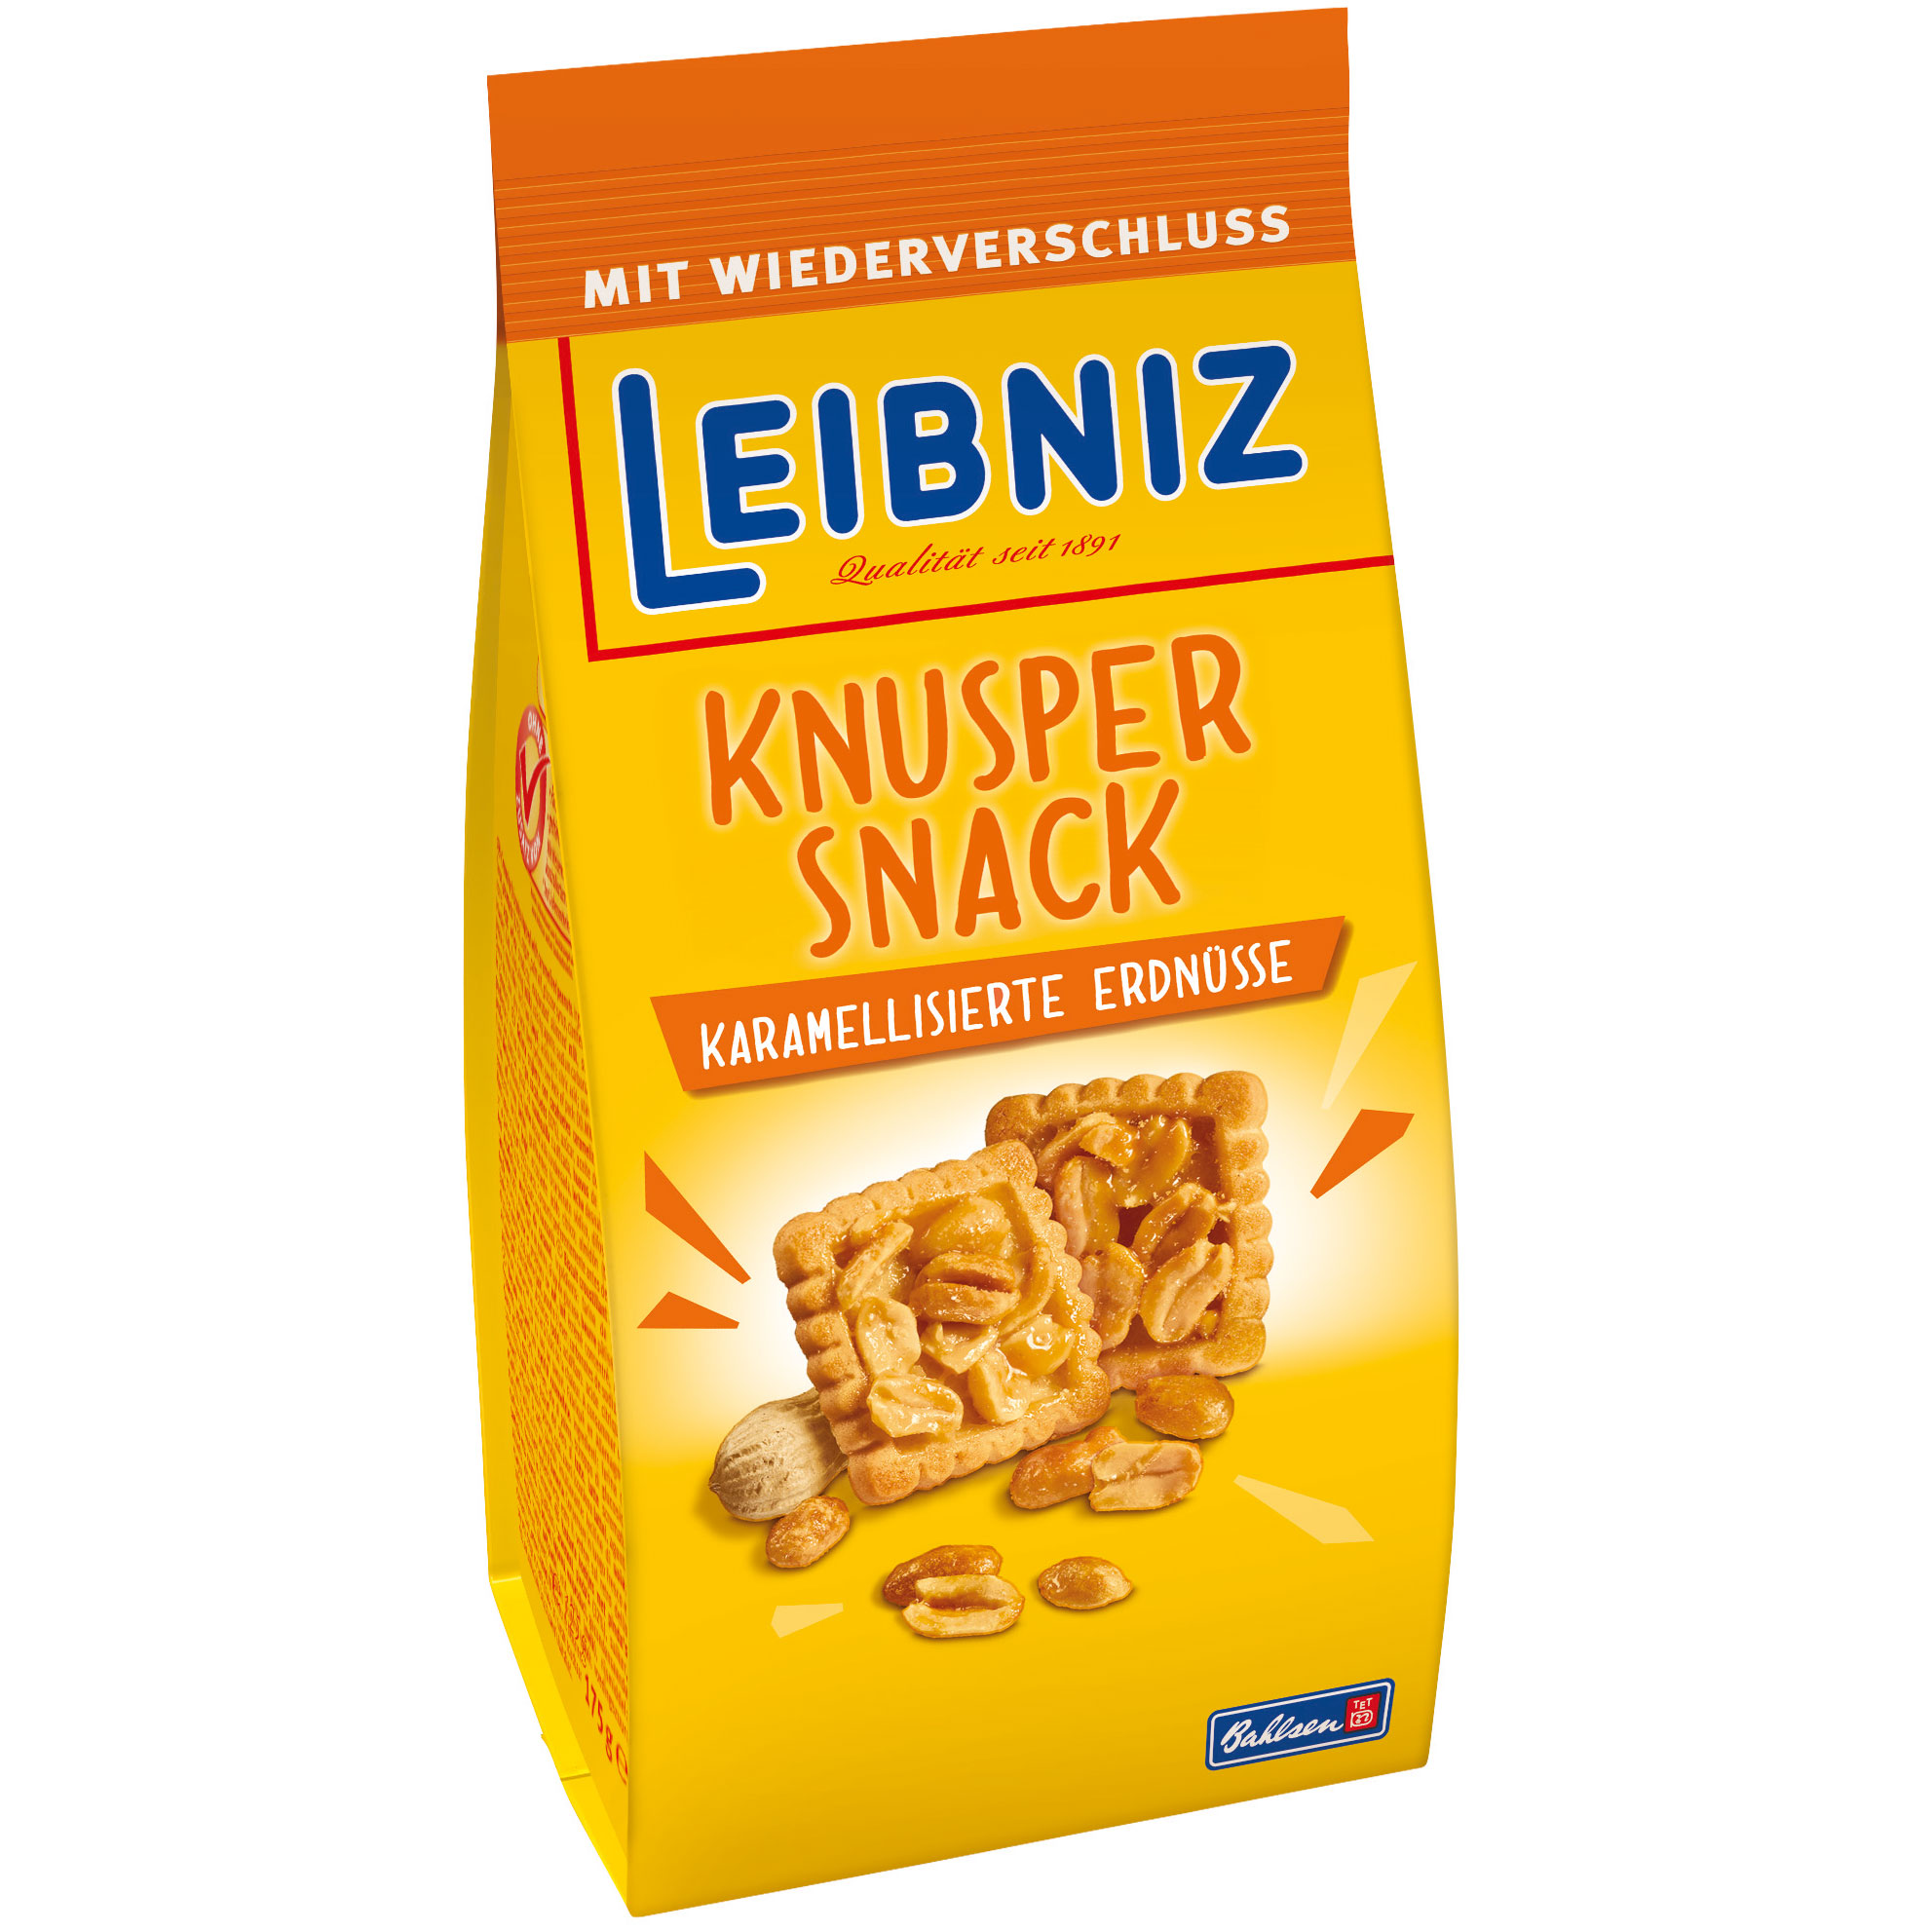 Leibniz Knusper Snack Karamellisierte Erdnüsse 175g | Online kaufen im ...